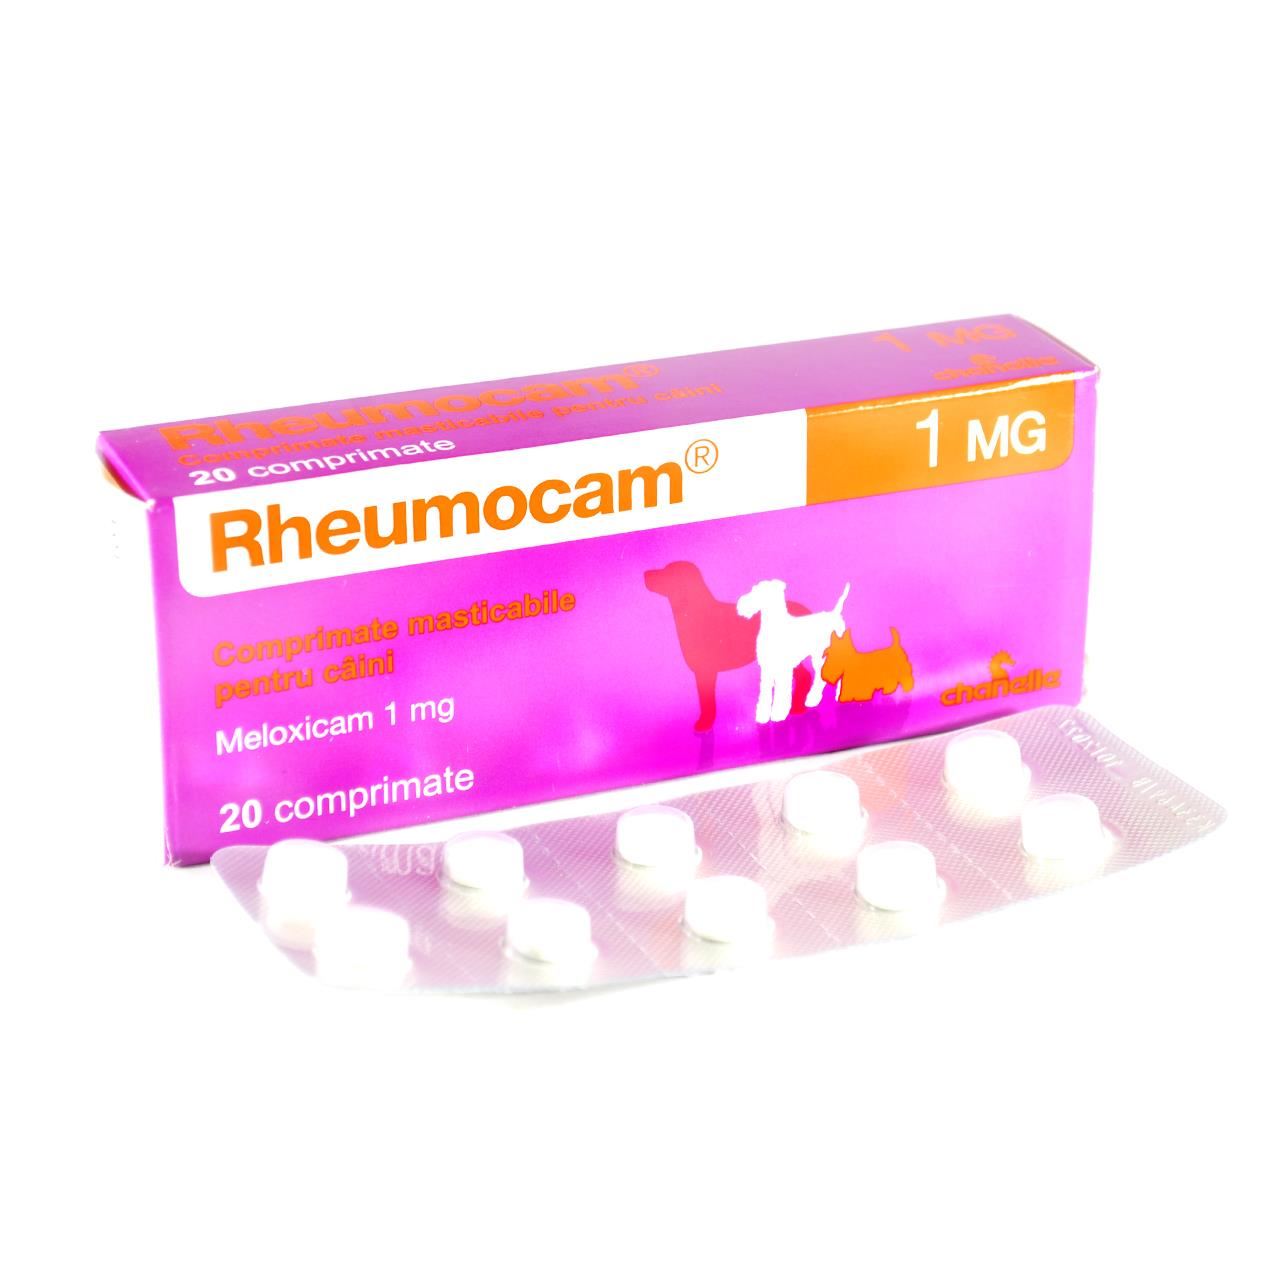 Rheumocam 1 mg, 20 comprimate - ALTVET - Farmacie veterinara - Pet Shop - Cosmetica